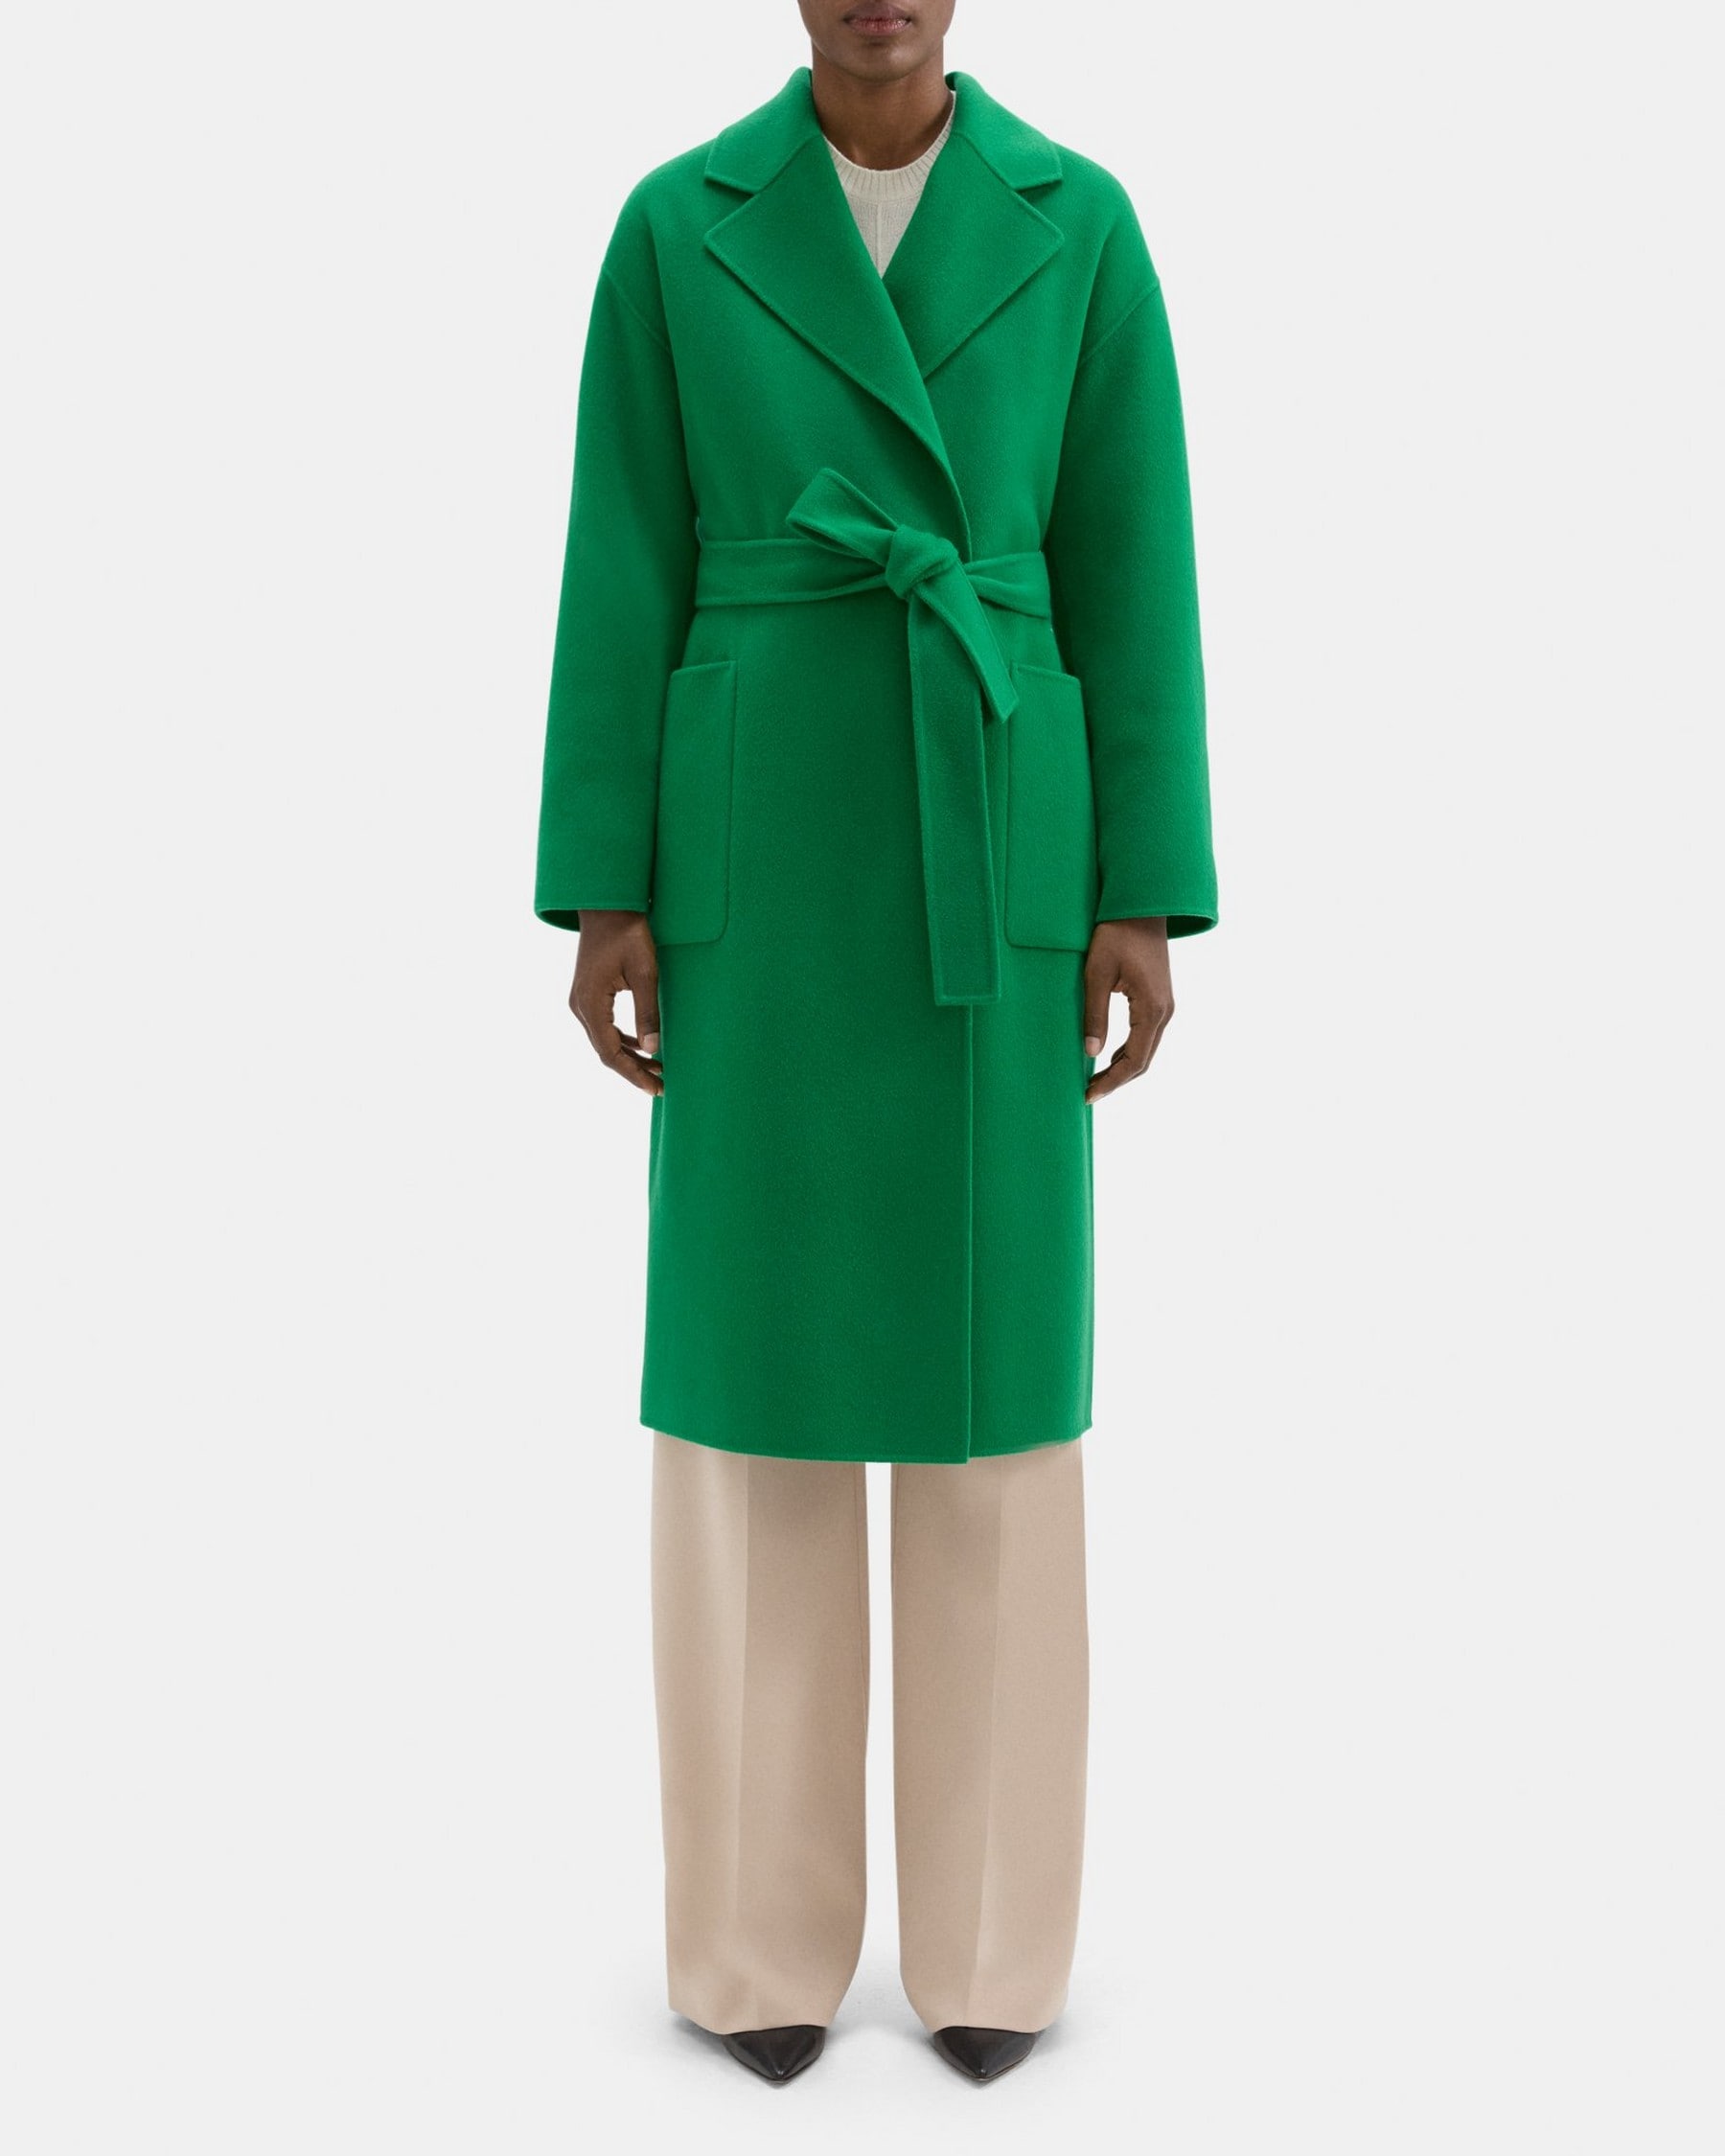 띠어리 Theory Robe Coat in Double-Face Wool-Cashmere,EMERALD